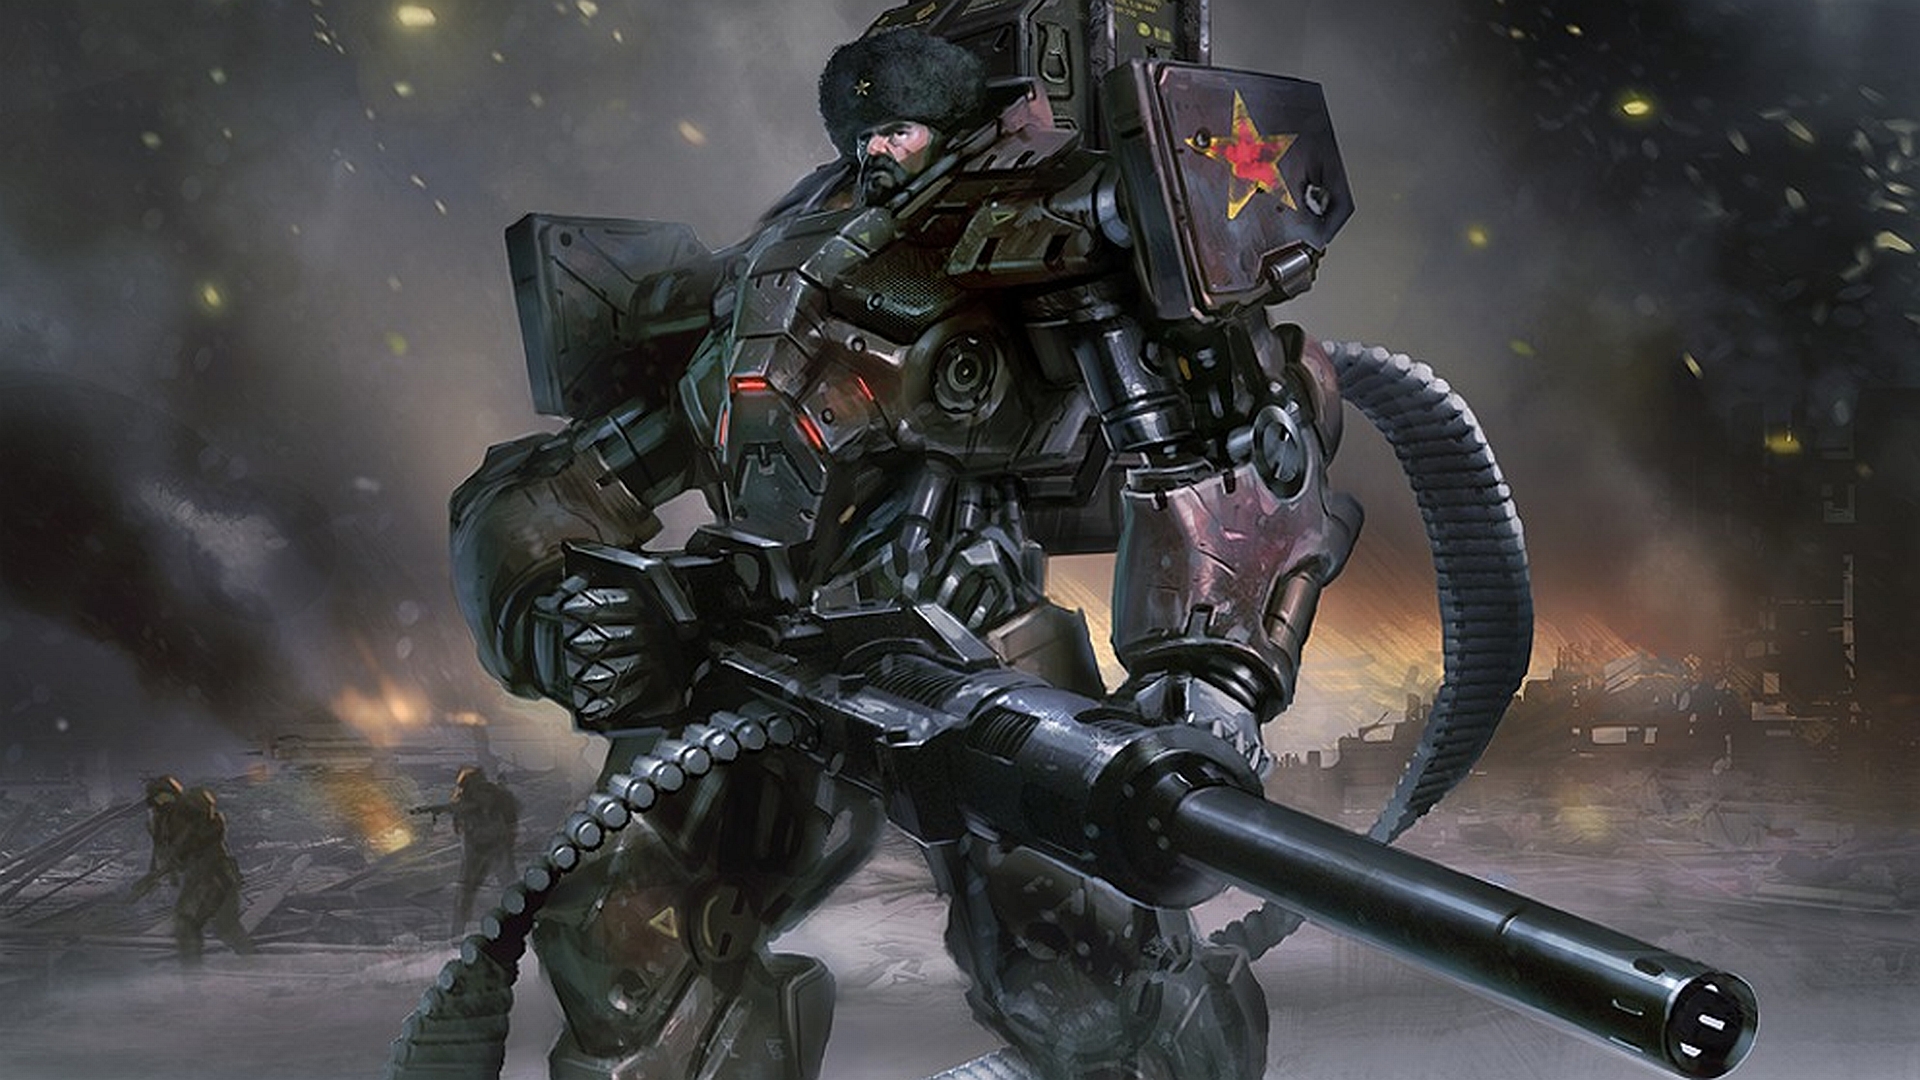 Sci Fi Russian warrior in mecha armor from Mental Omega desktop wallpaper.